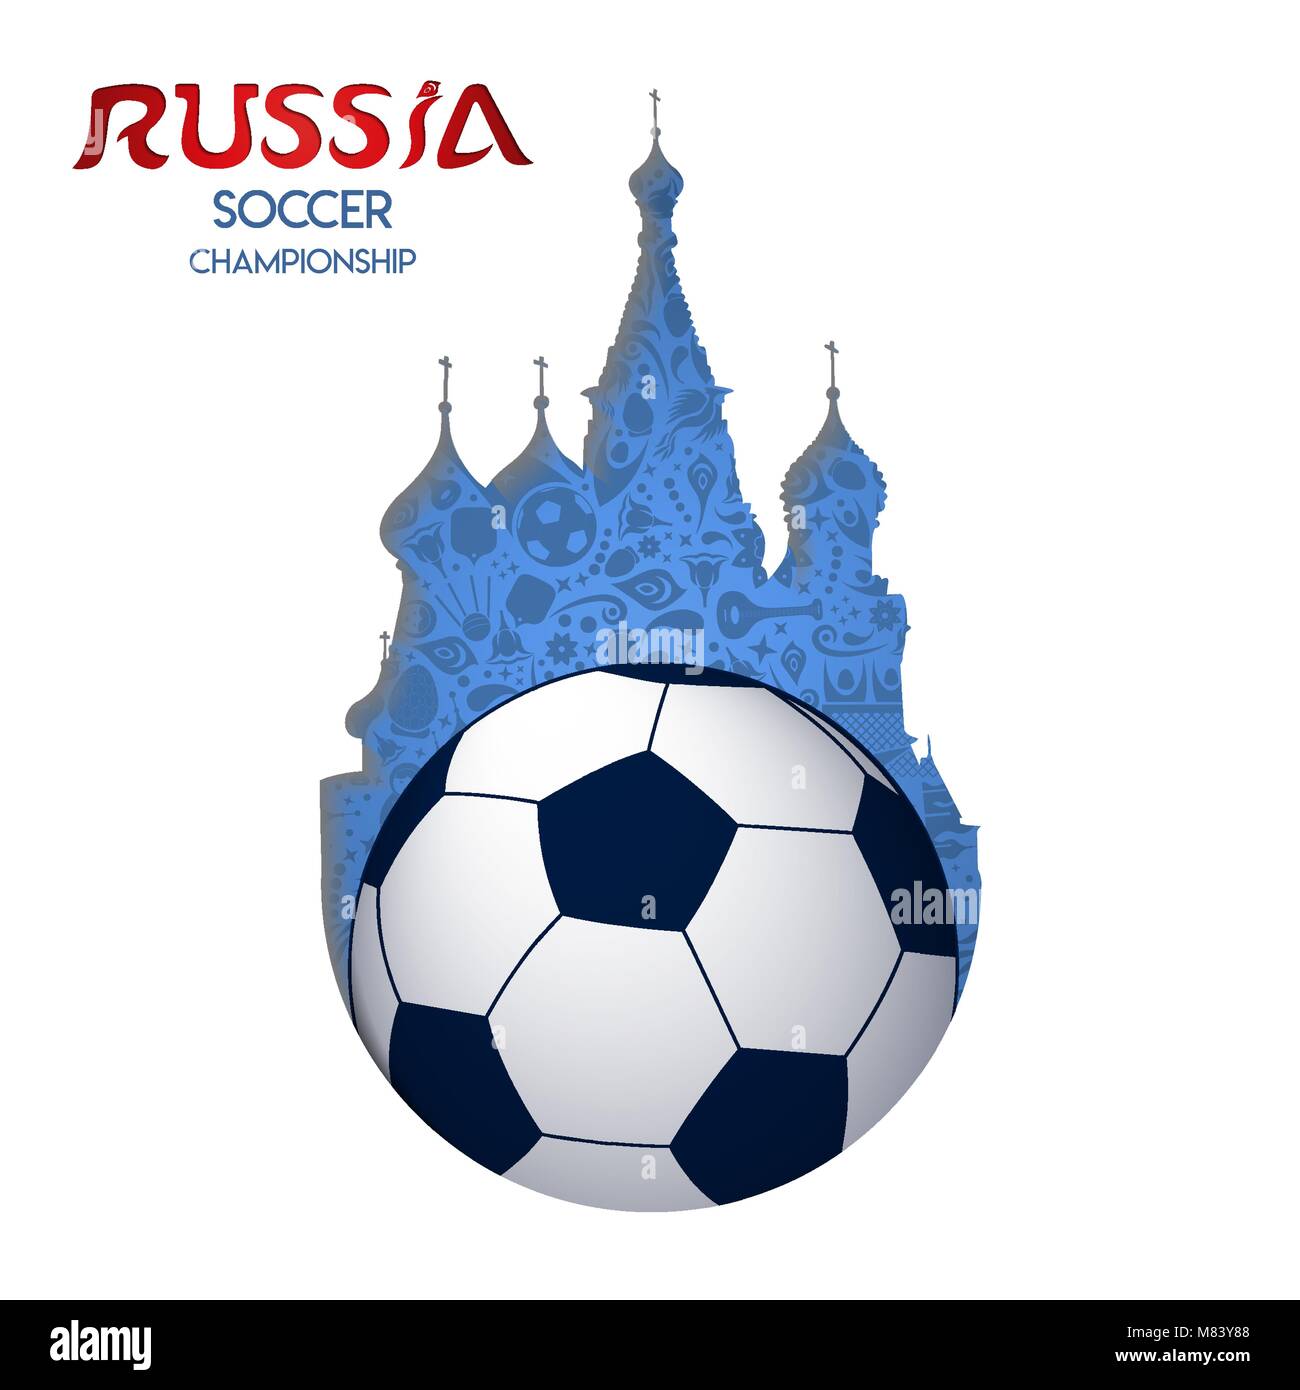 Russische Veranstaltung Papier Ausschnitt der Moskauer Kathedrale und Fußball-Ball mit Russland Typografie Zitat. EPS 10 Vektor. Stock Vektor